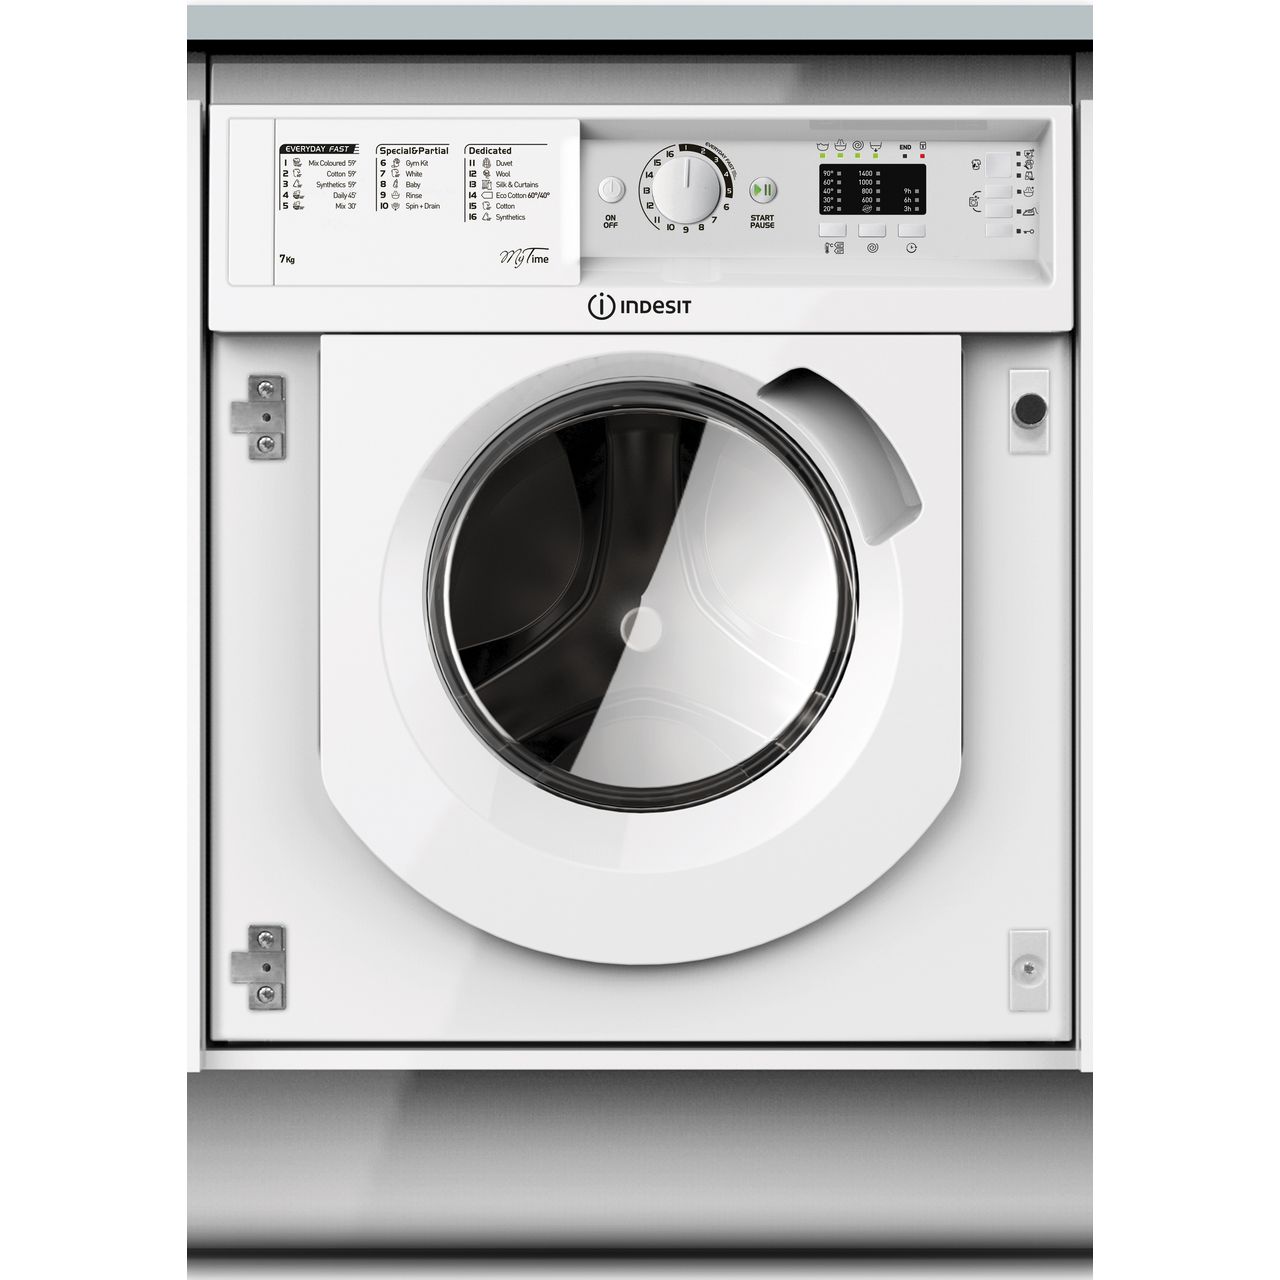 Can You Wash A Double Duvet In A 7kg Washing Machine Biwmml71452 Wh Indesit Washing Machine Ao Com